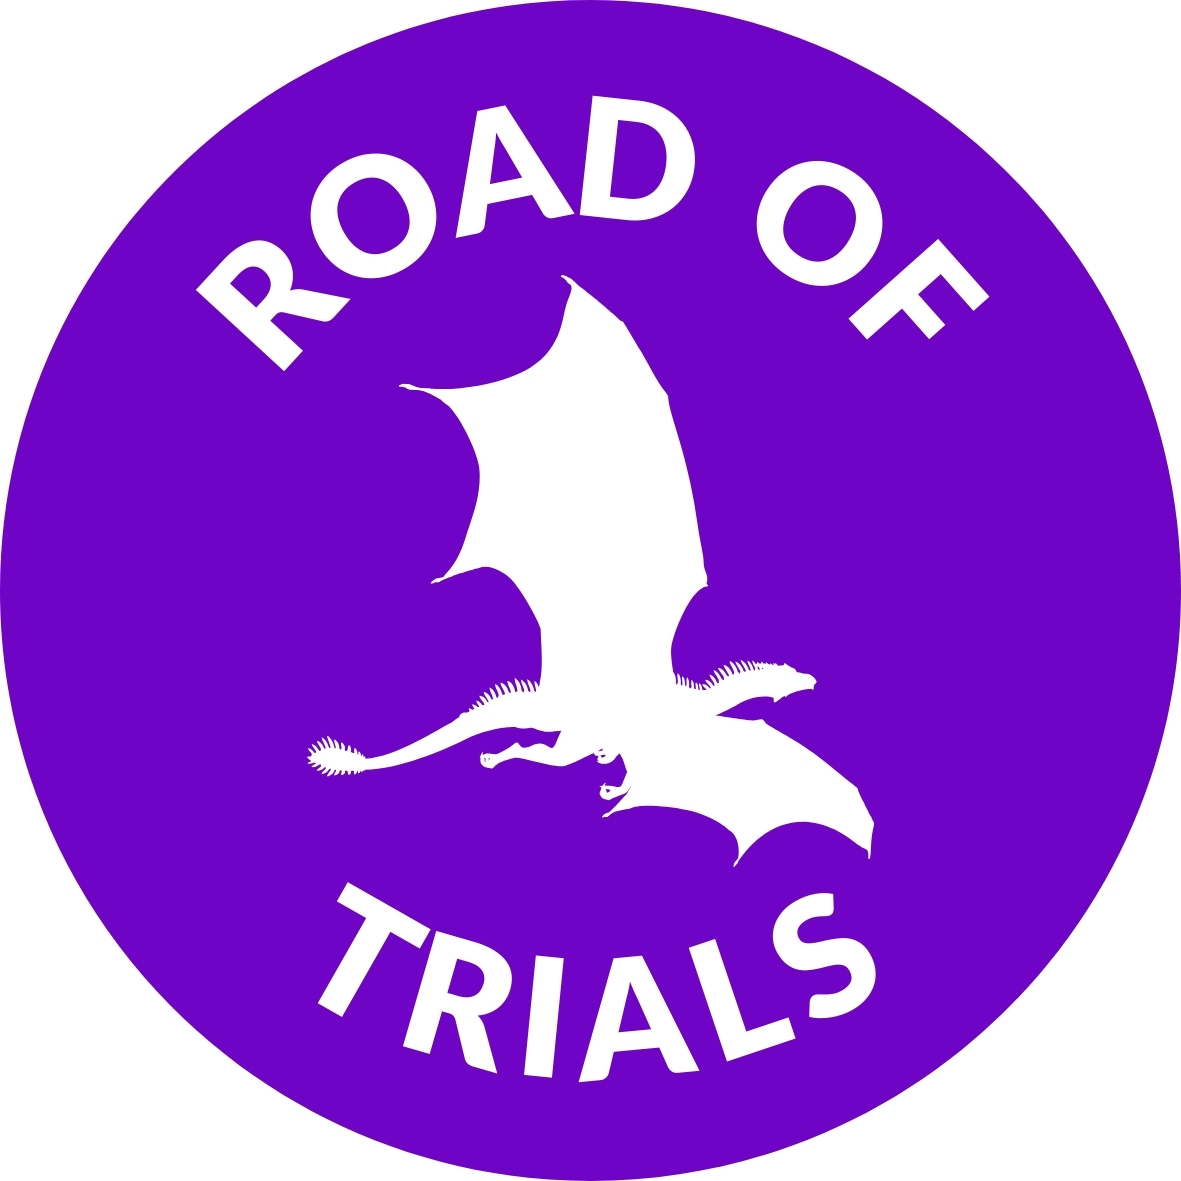 Road of Trials